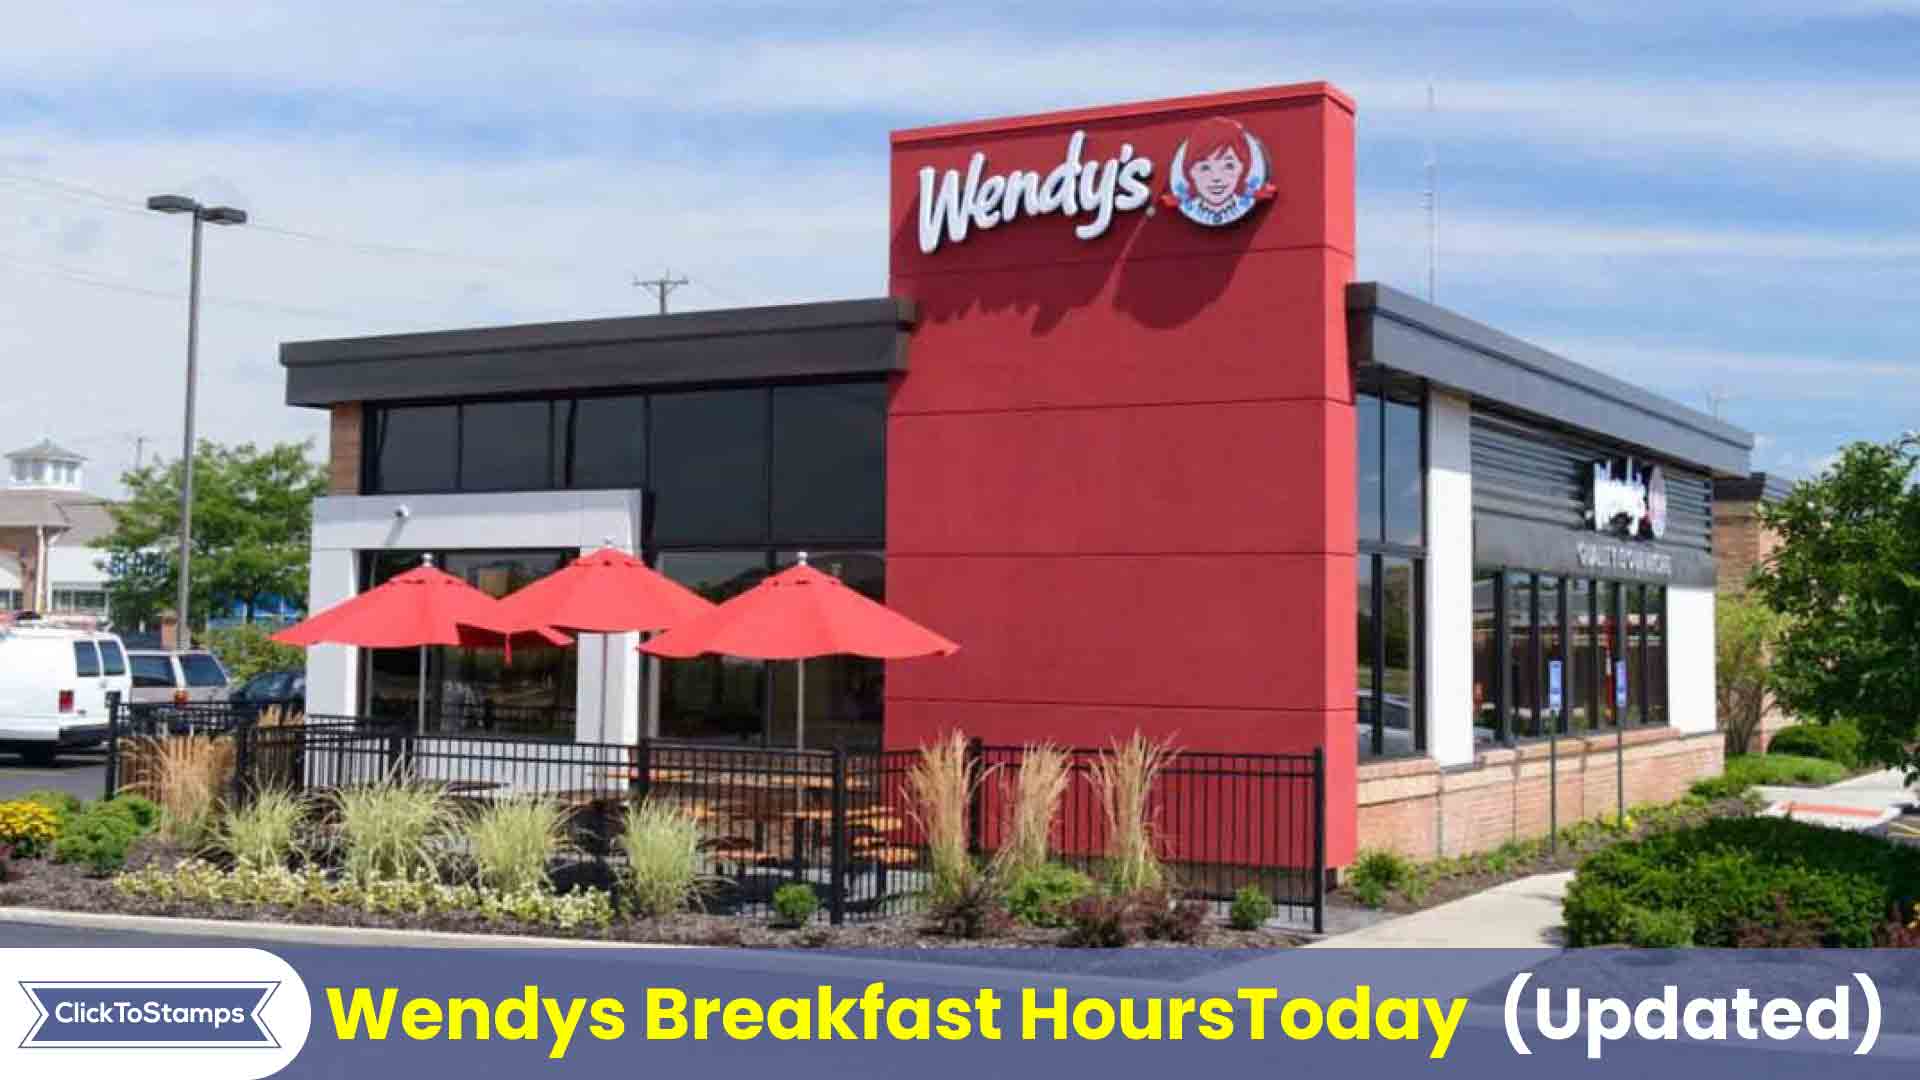 Wendys Breakfast Hours